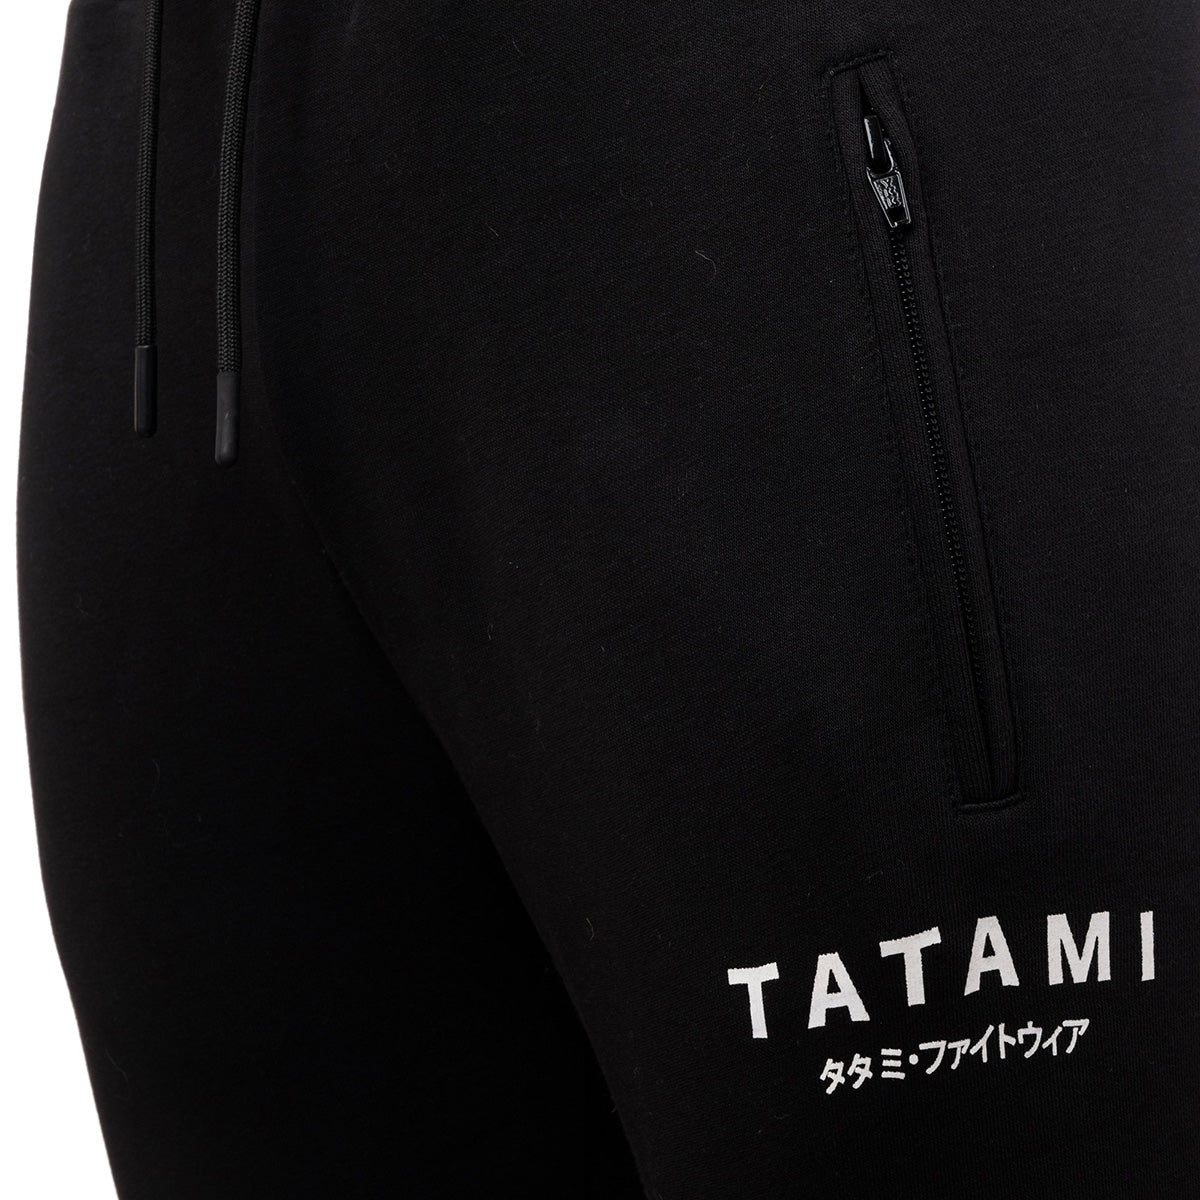 Tatami Fightwear Katakana Joggers - Black Tatami Fightwear